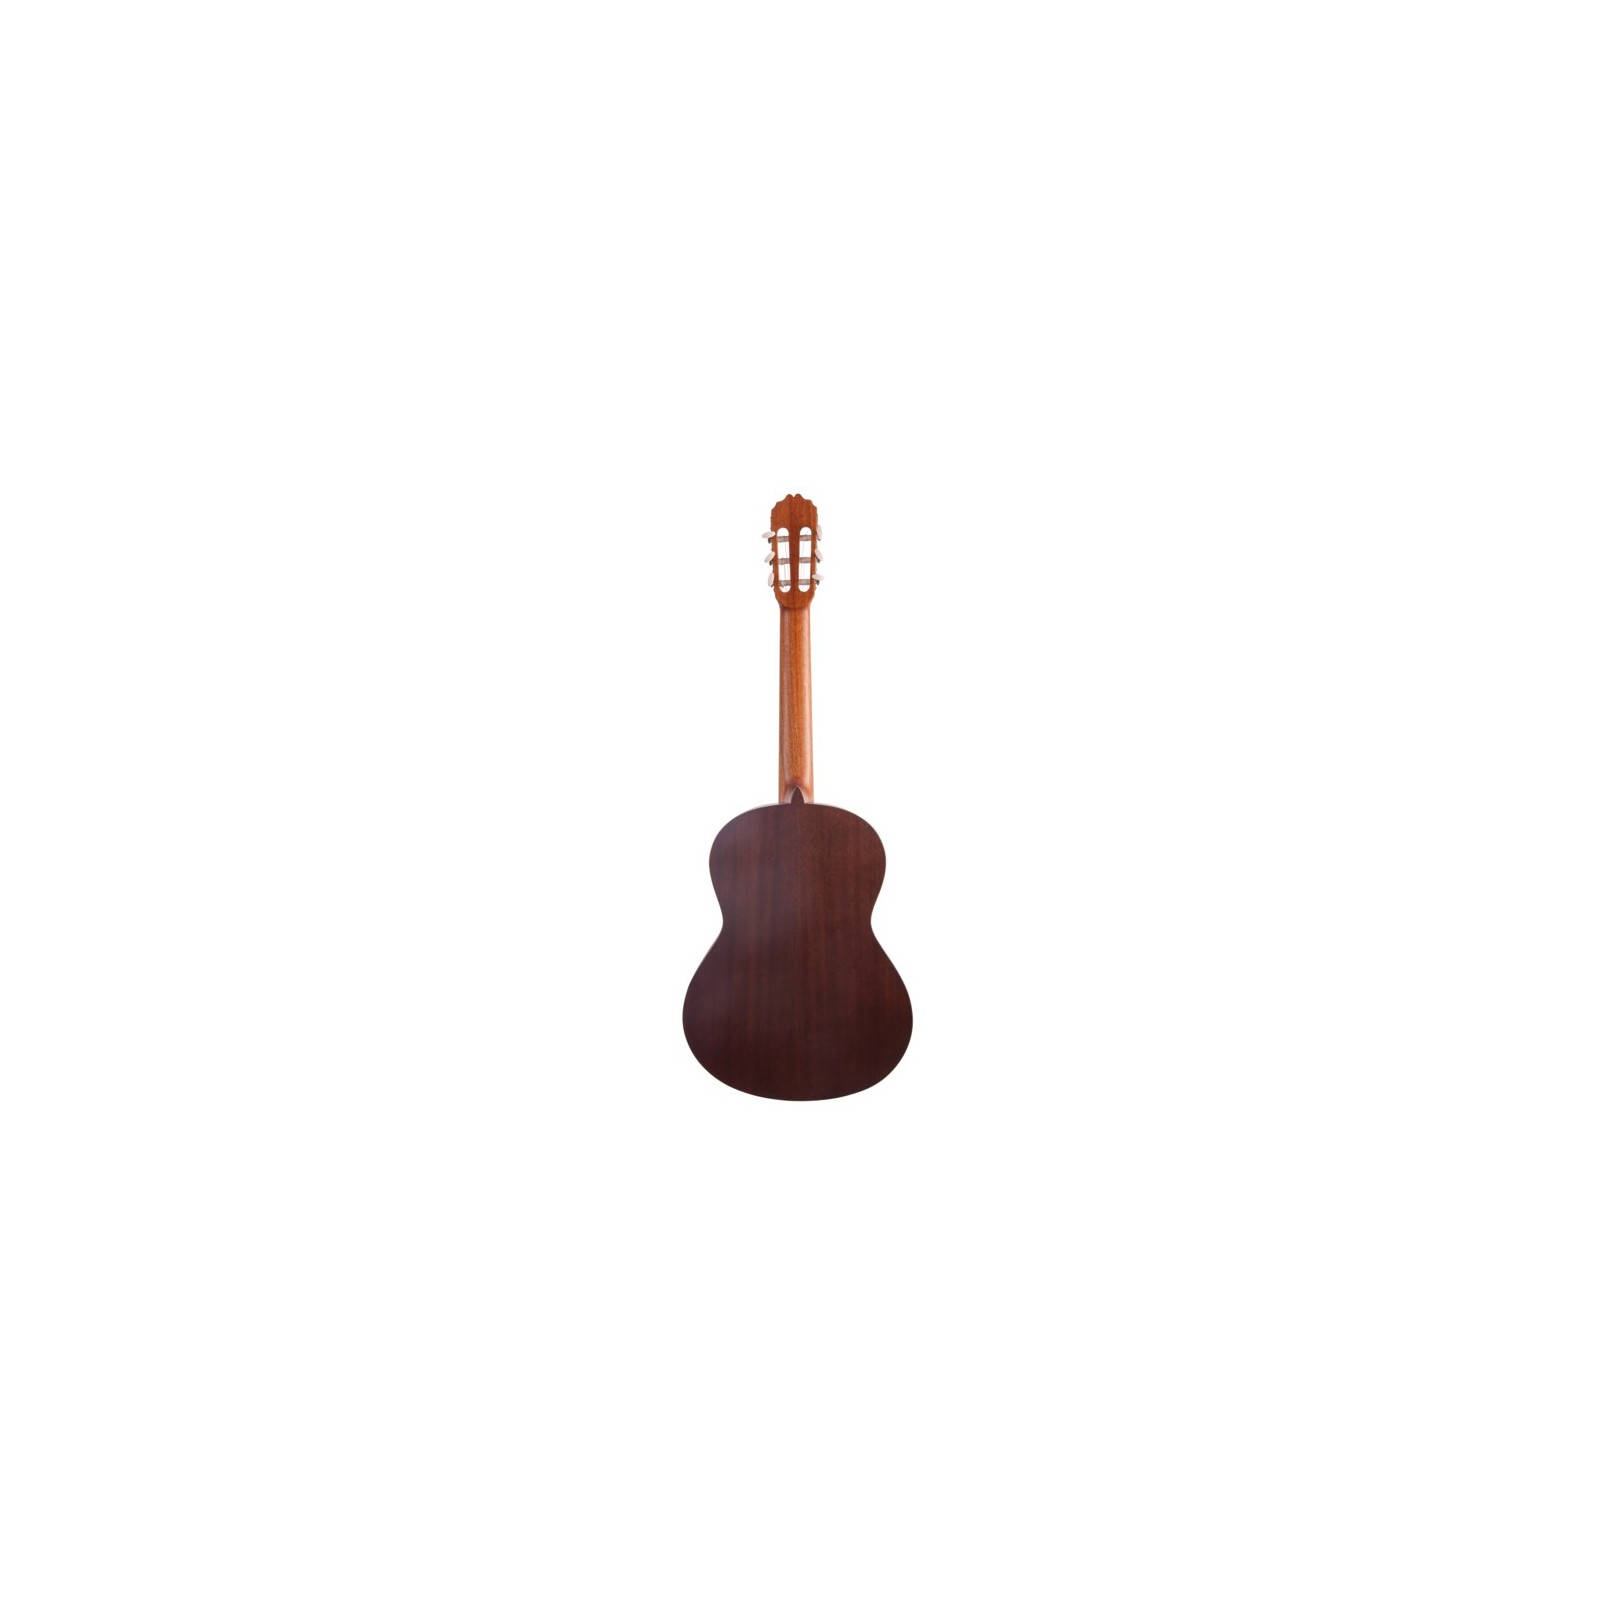 Housse pour Guitare Classique 3/4 Tobago GB20C3 Noir